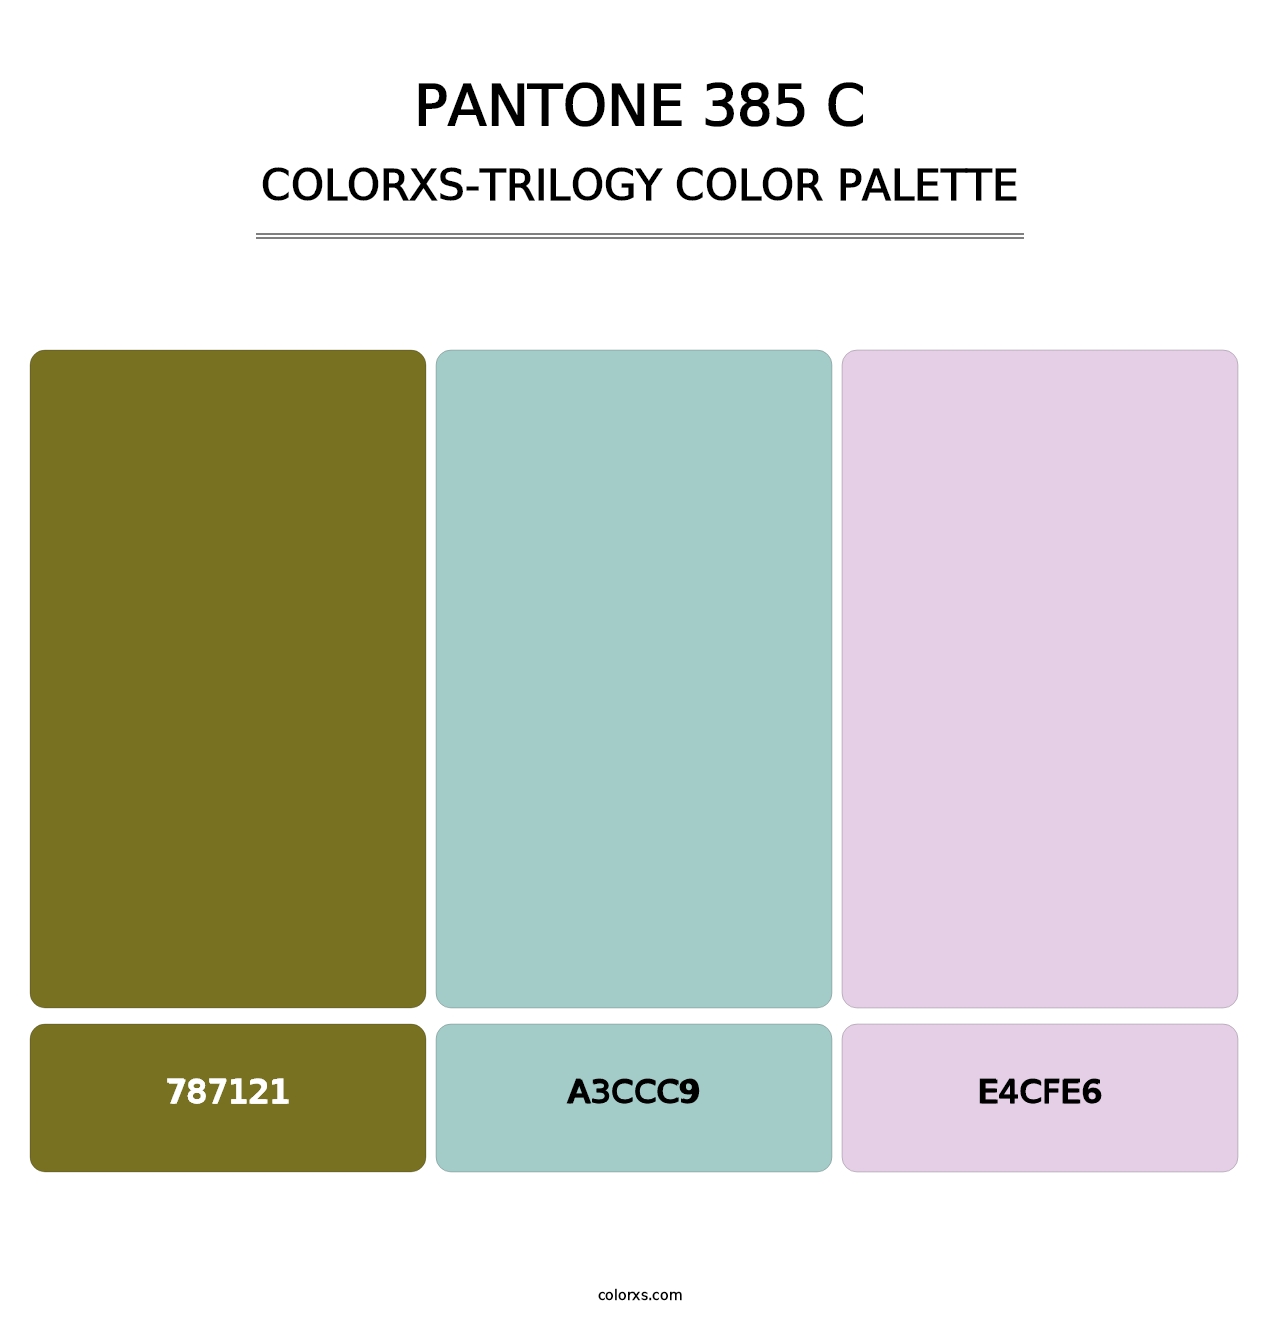 PANTONE 385 C - Colorxs Trilogy Palette